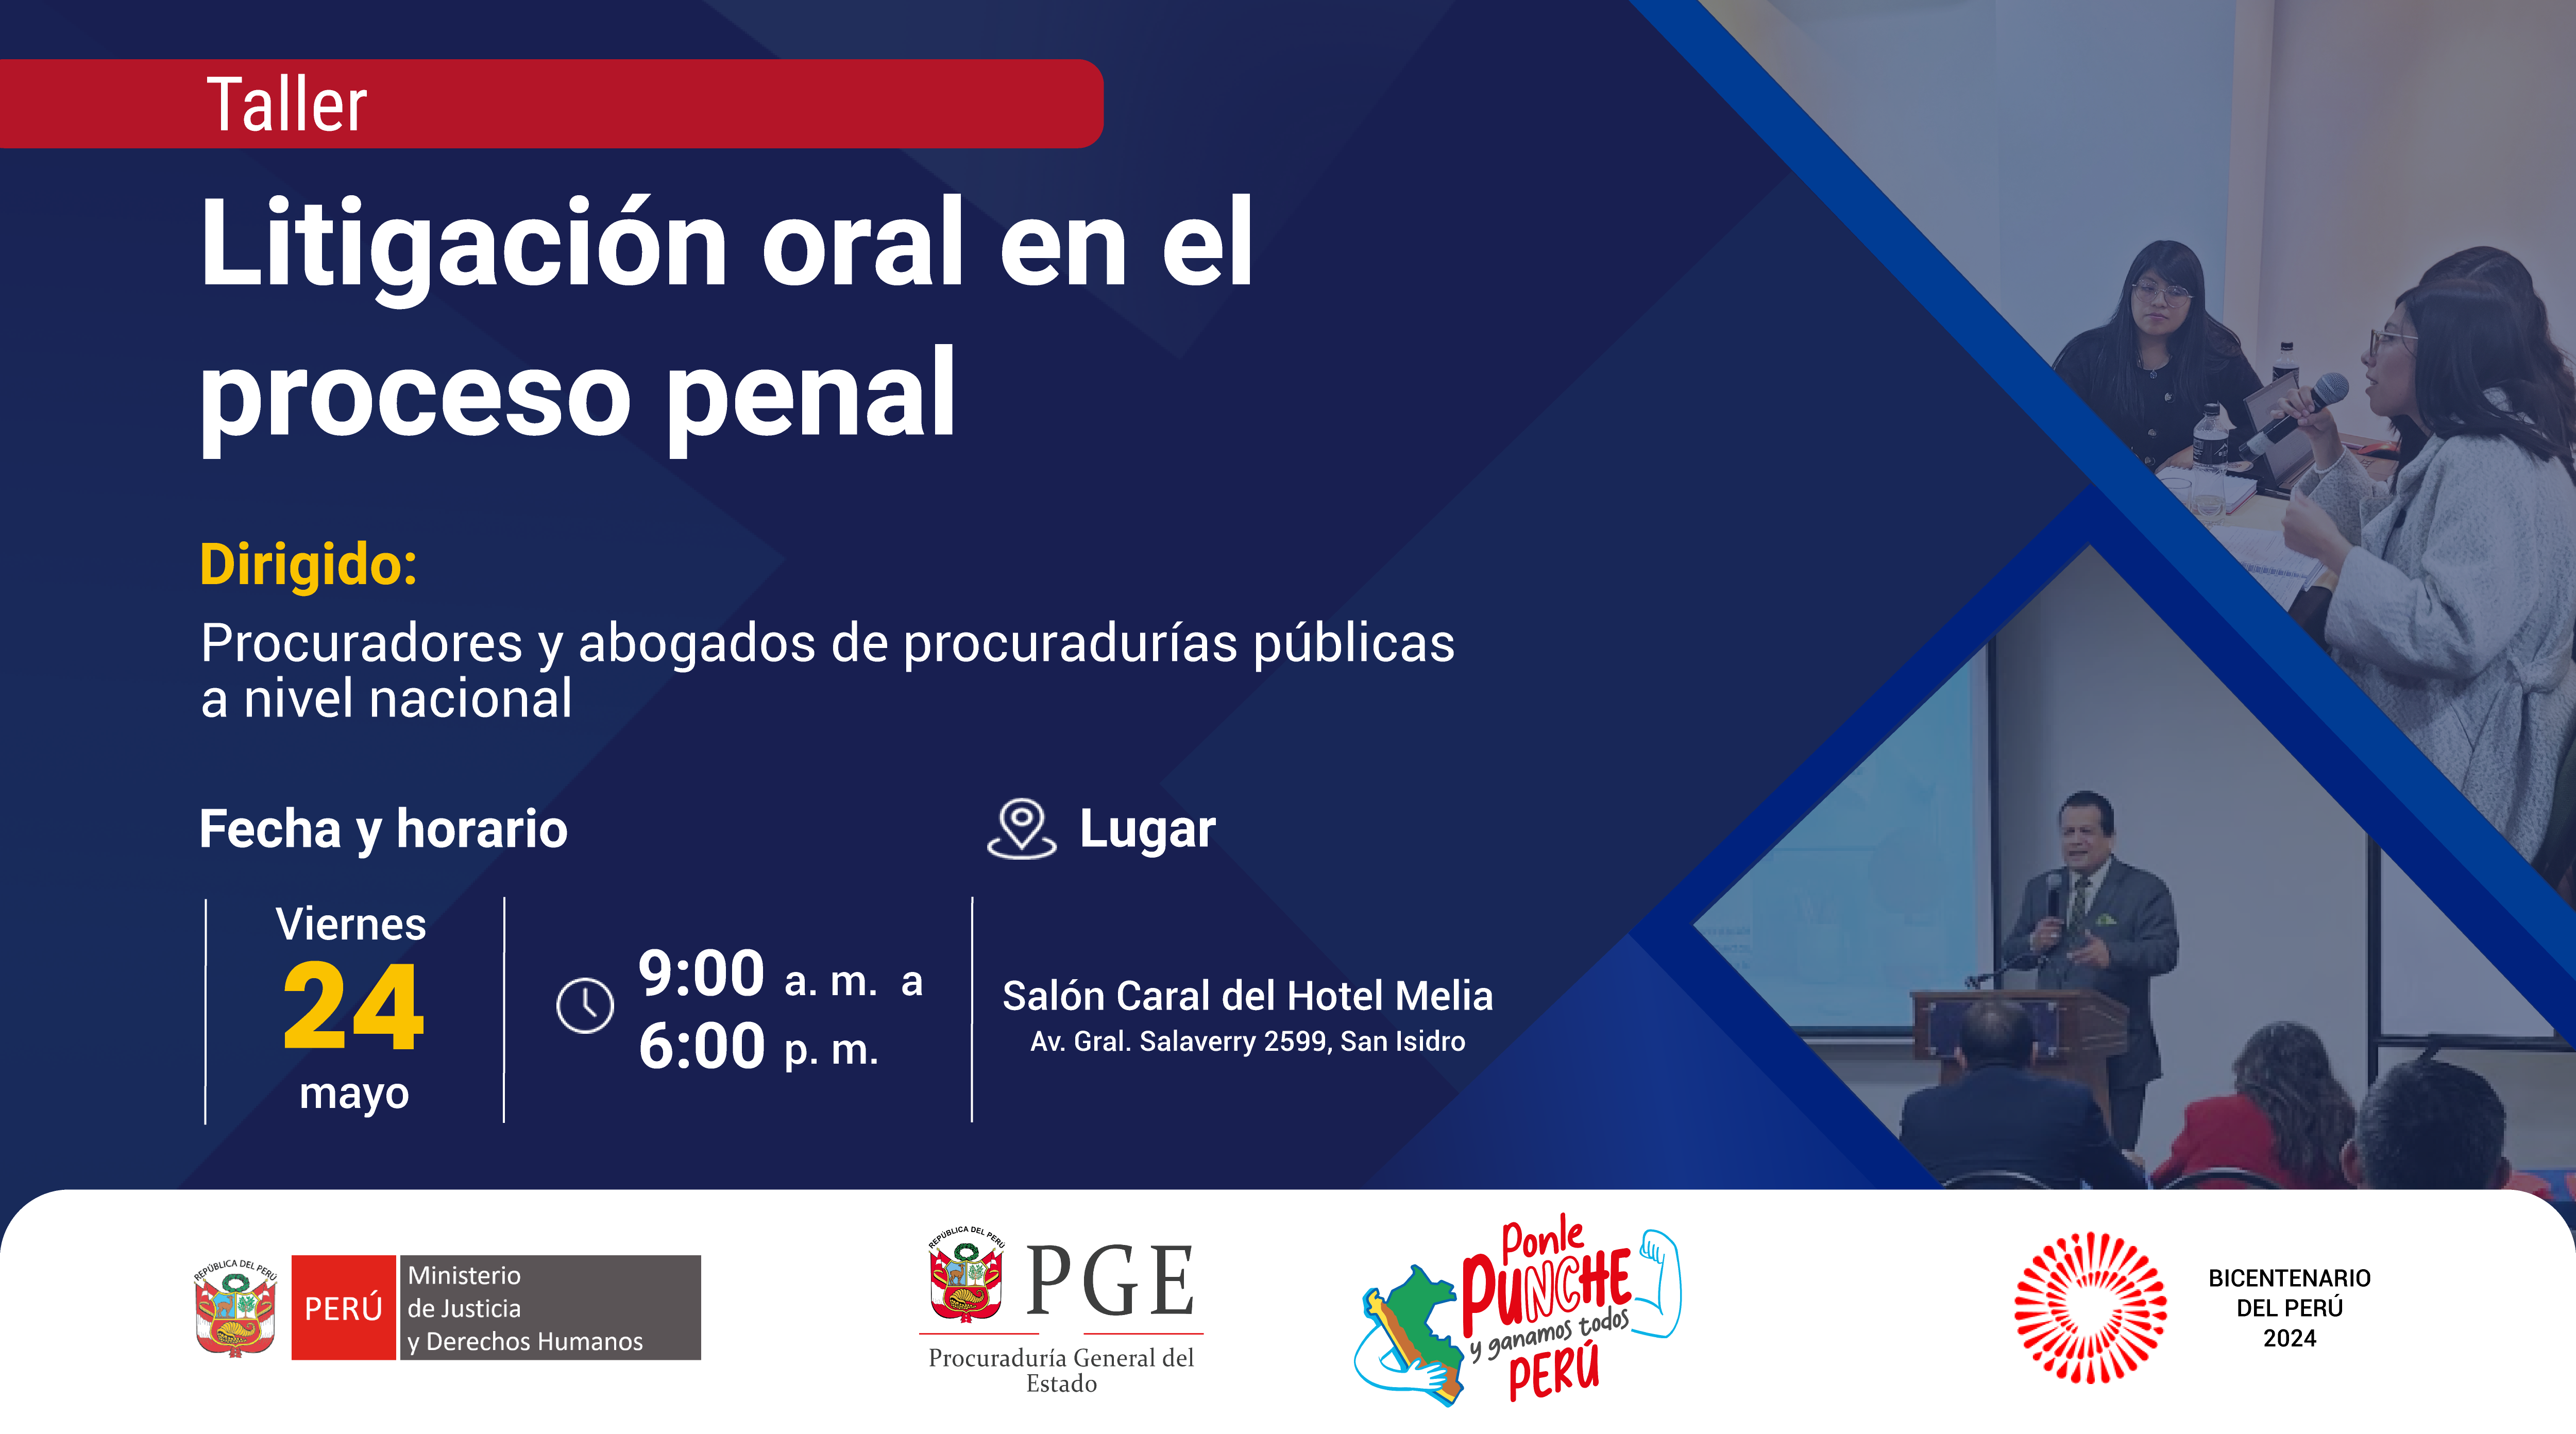 Taller - Litigación oral en el proceso penal - Lima